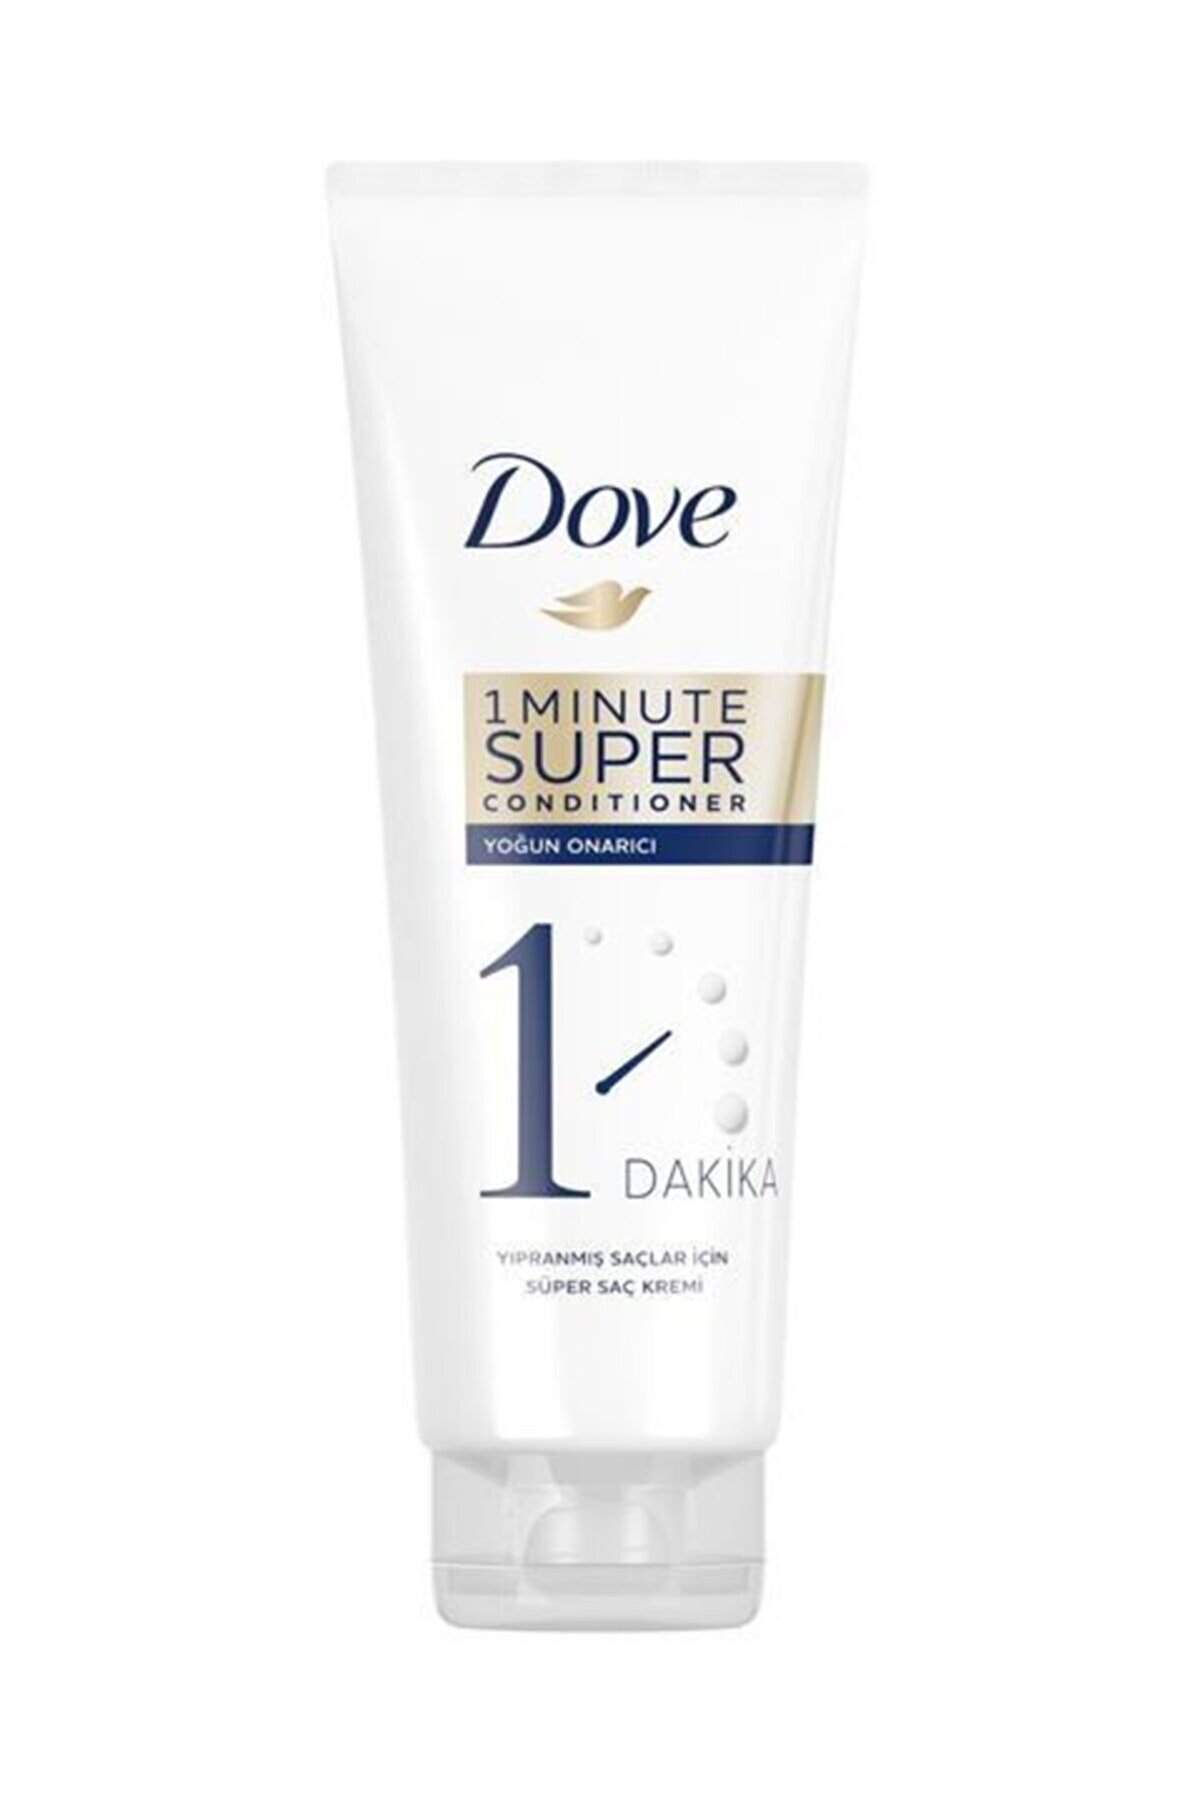 Dove 1 Minute Yoğun Onarıcı Süper Saç Bakım Kremi 170 Ml